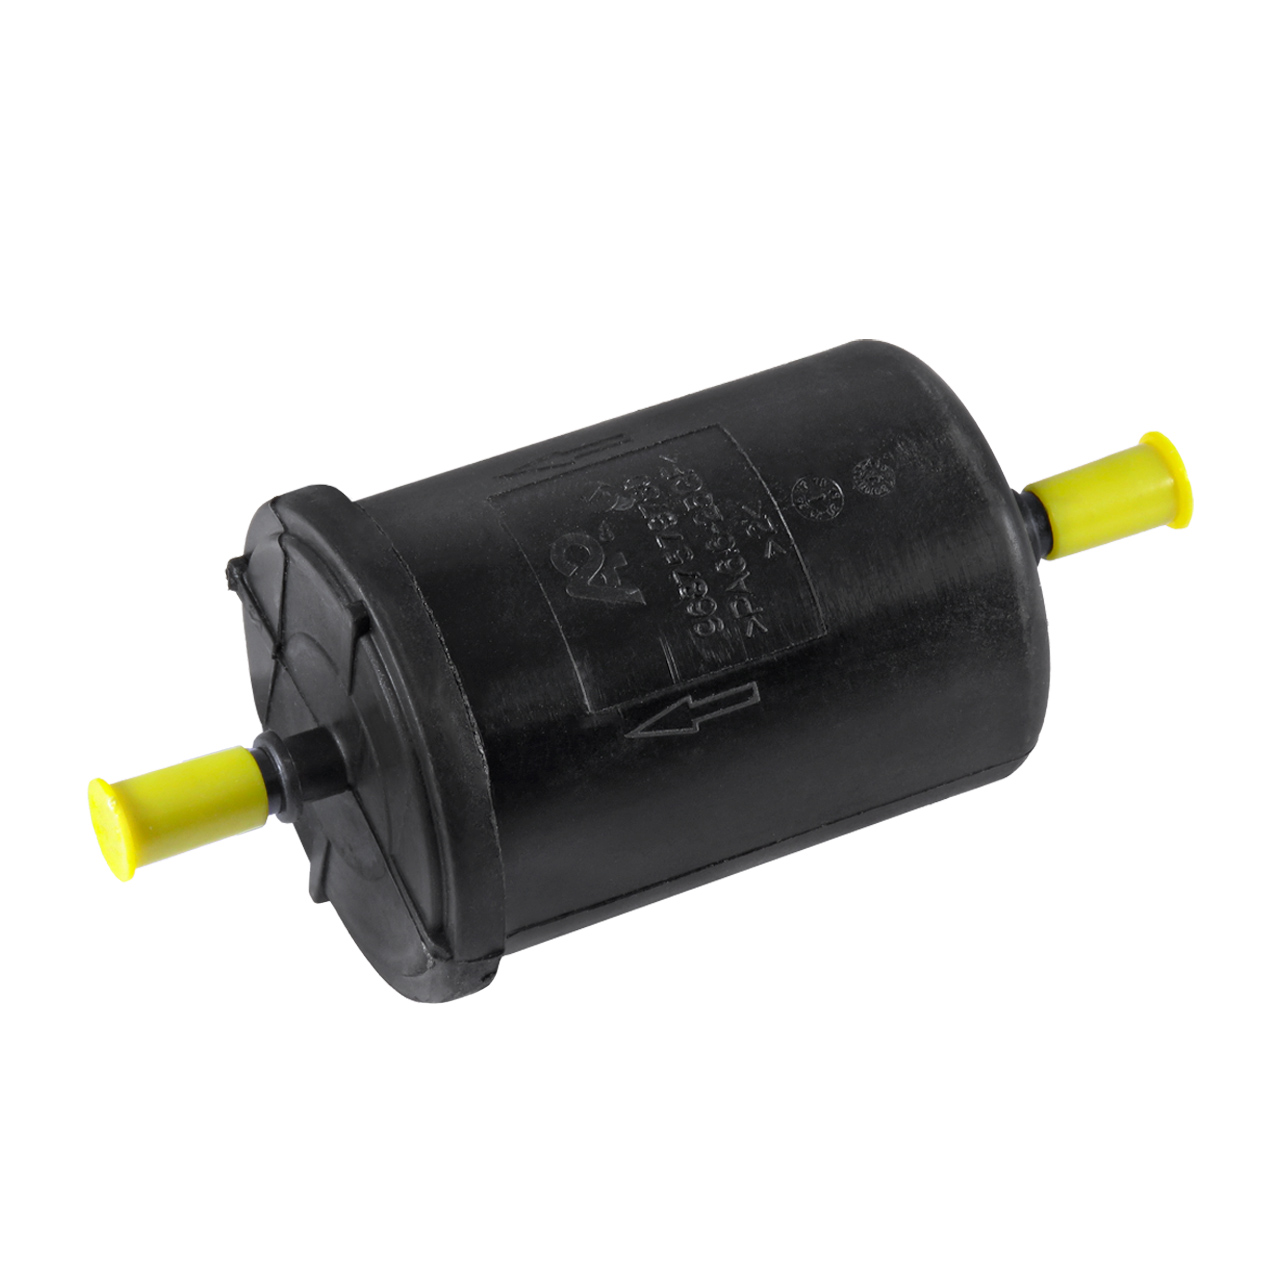 فیلتر بنزین دینا پارت کد H224016 مناسب برای پژو 206